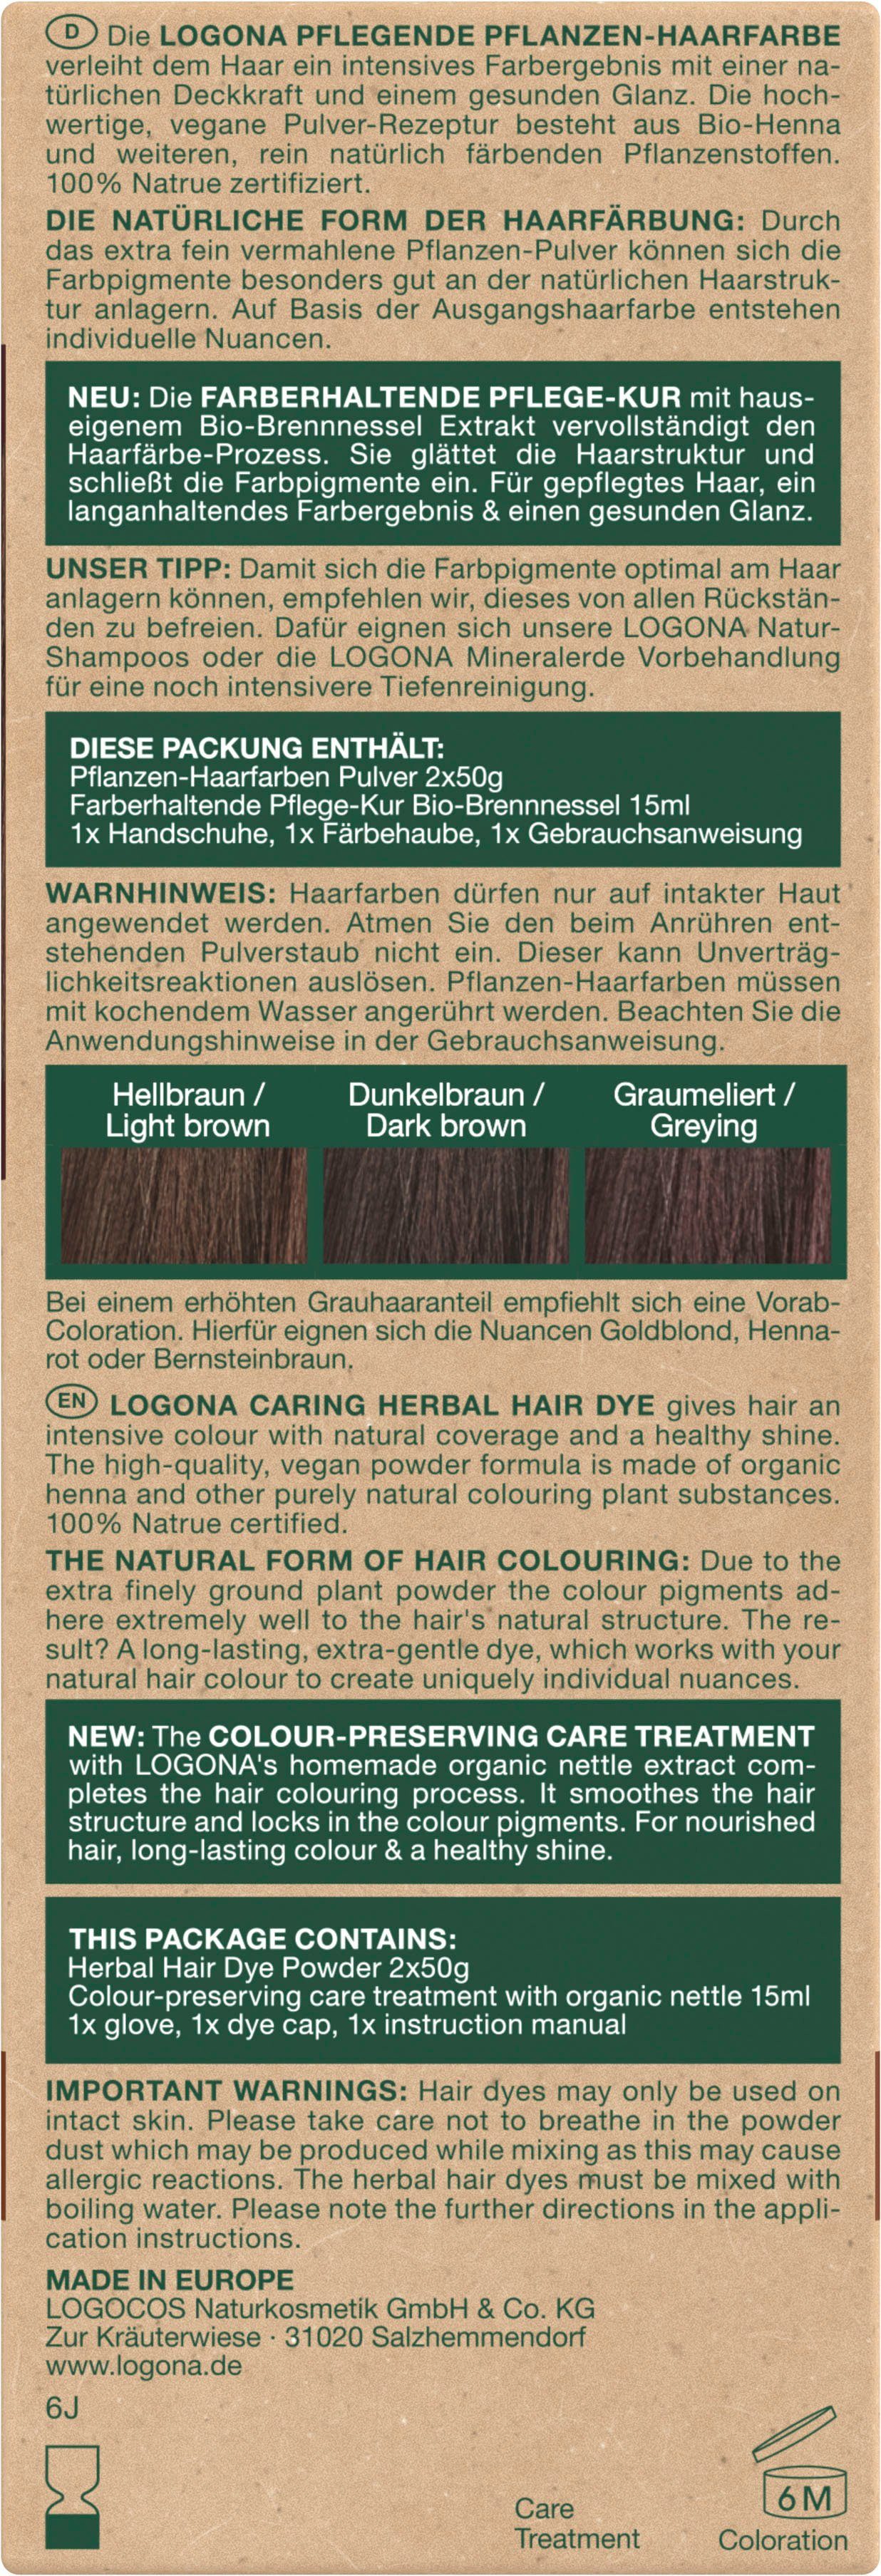 Pflanzen-Haarfarbe Haarfarbe Pulver Kaffeebraun 10 LOGONA